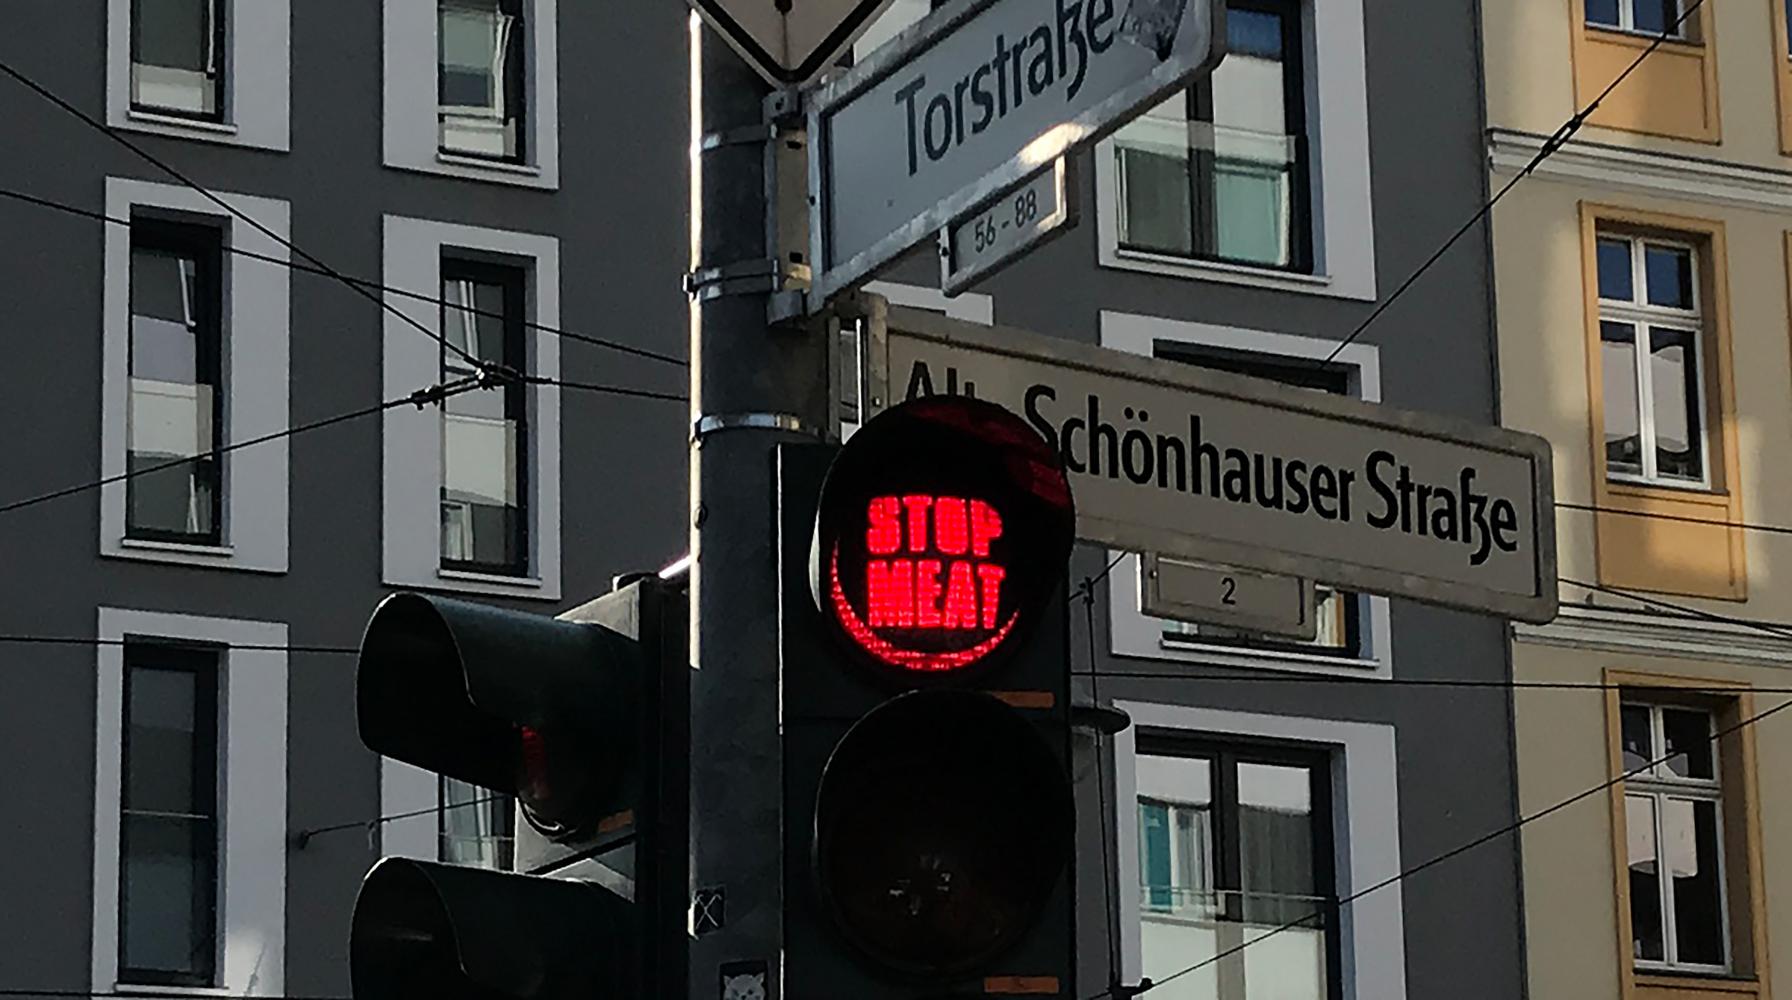  "Stop meat" steht auf einer Ampel an der Schönhauser Straße/Torstraße im Berliner Stadtteil Mitte